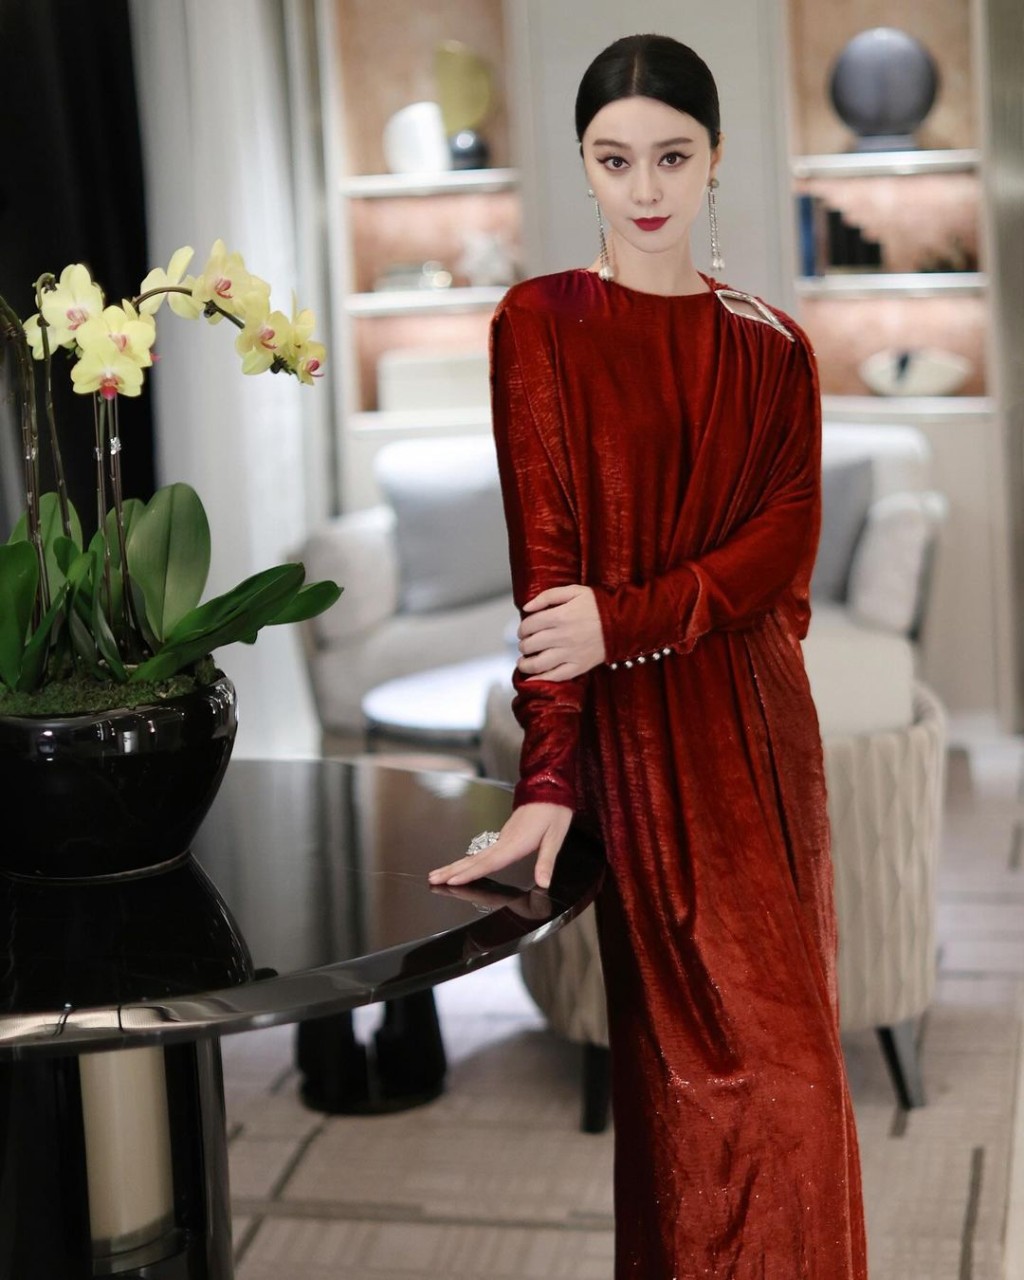 不過有網民批評禮裙太過老氣，而且沒有收腰的寬鬆設計令范冰冰看上去似披了一塊紅色窗簾布在身上。